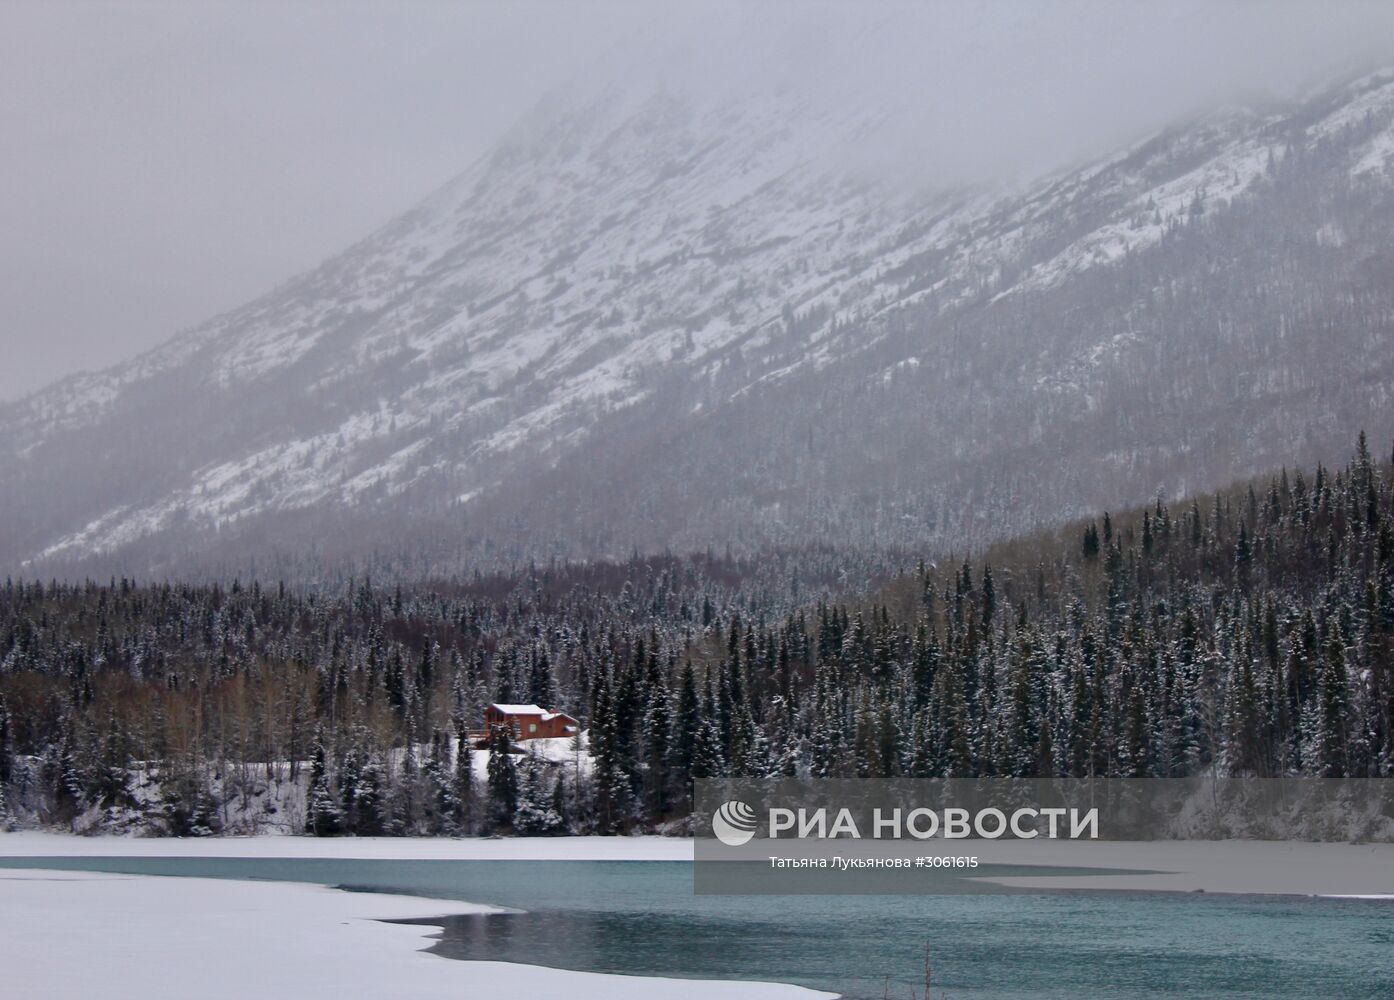 Аляска: поселения потомков первых русских поселенцев